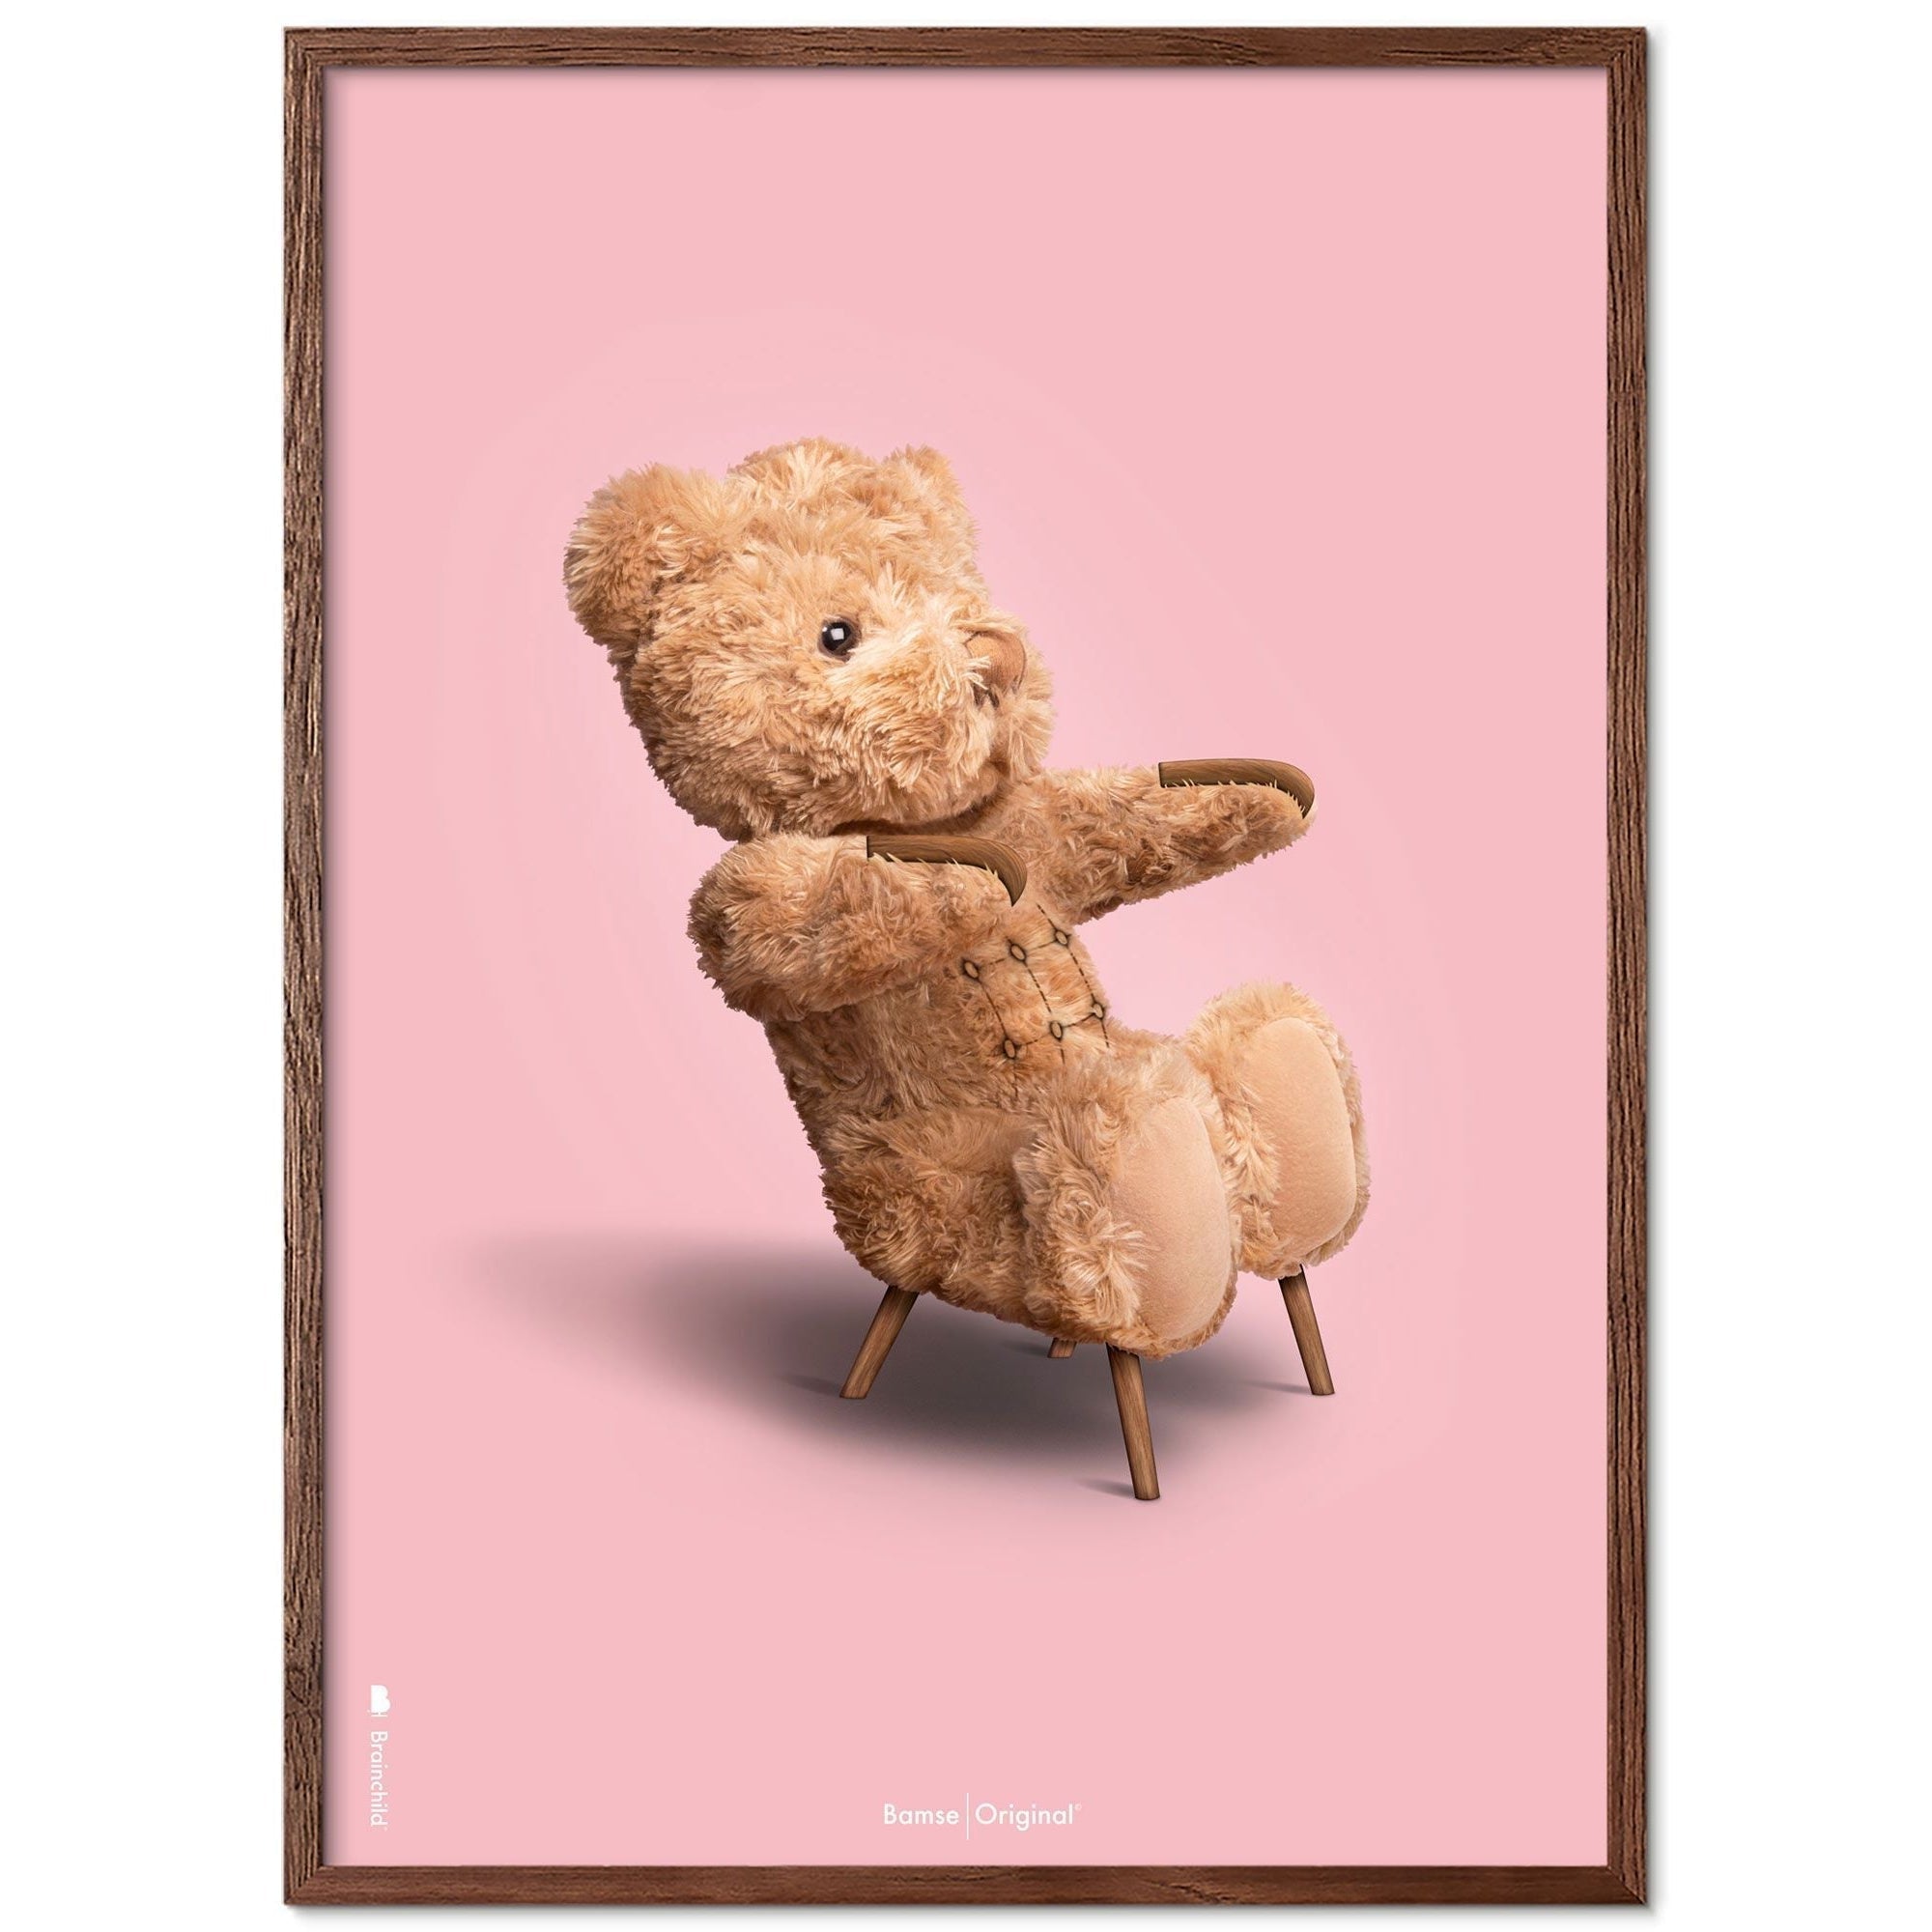 Brainchild Teddy Bear Classic plakát s tmavým dřevem Ram Ram A5, růžové pozadí